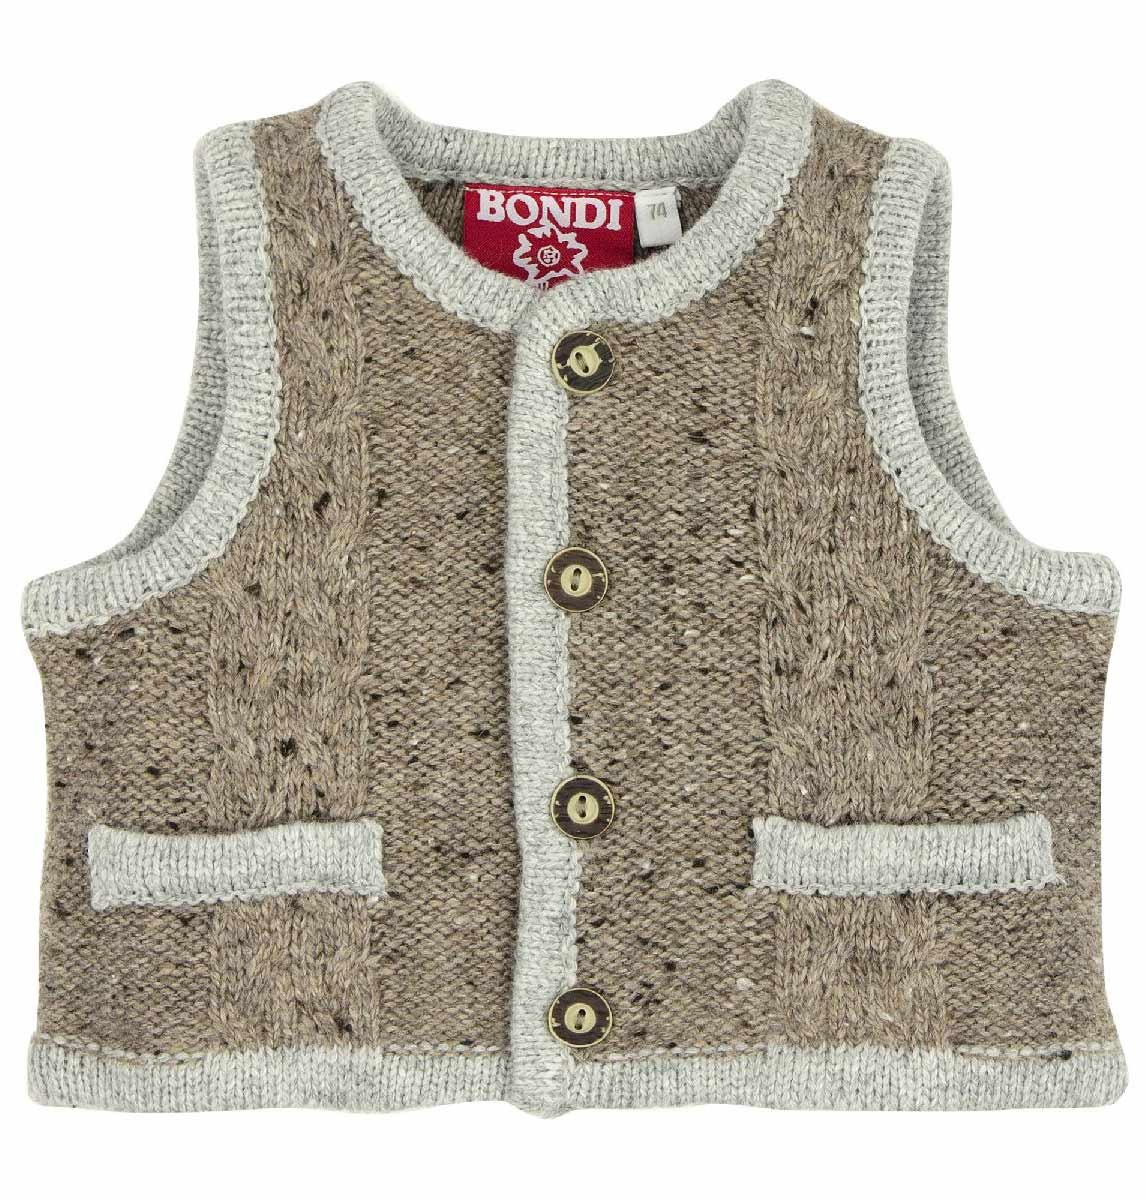 Traditioneel gebreid vest (baby vest)